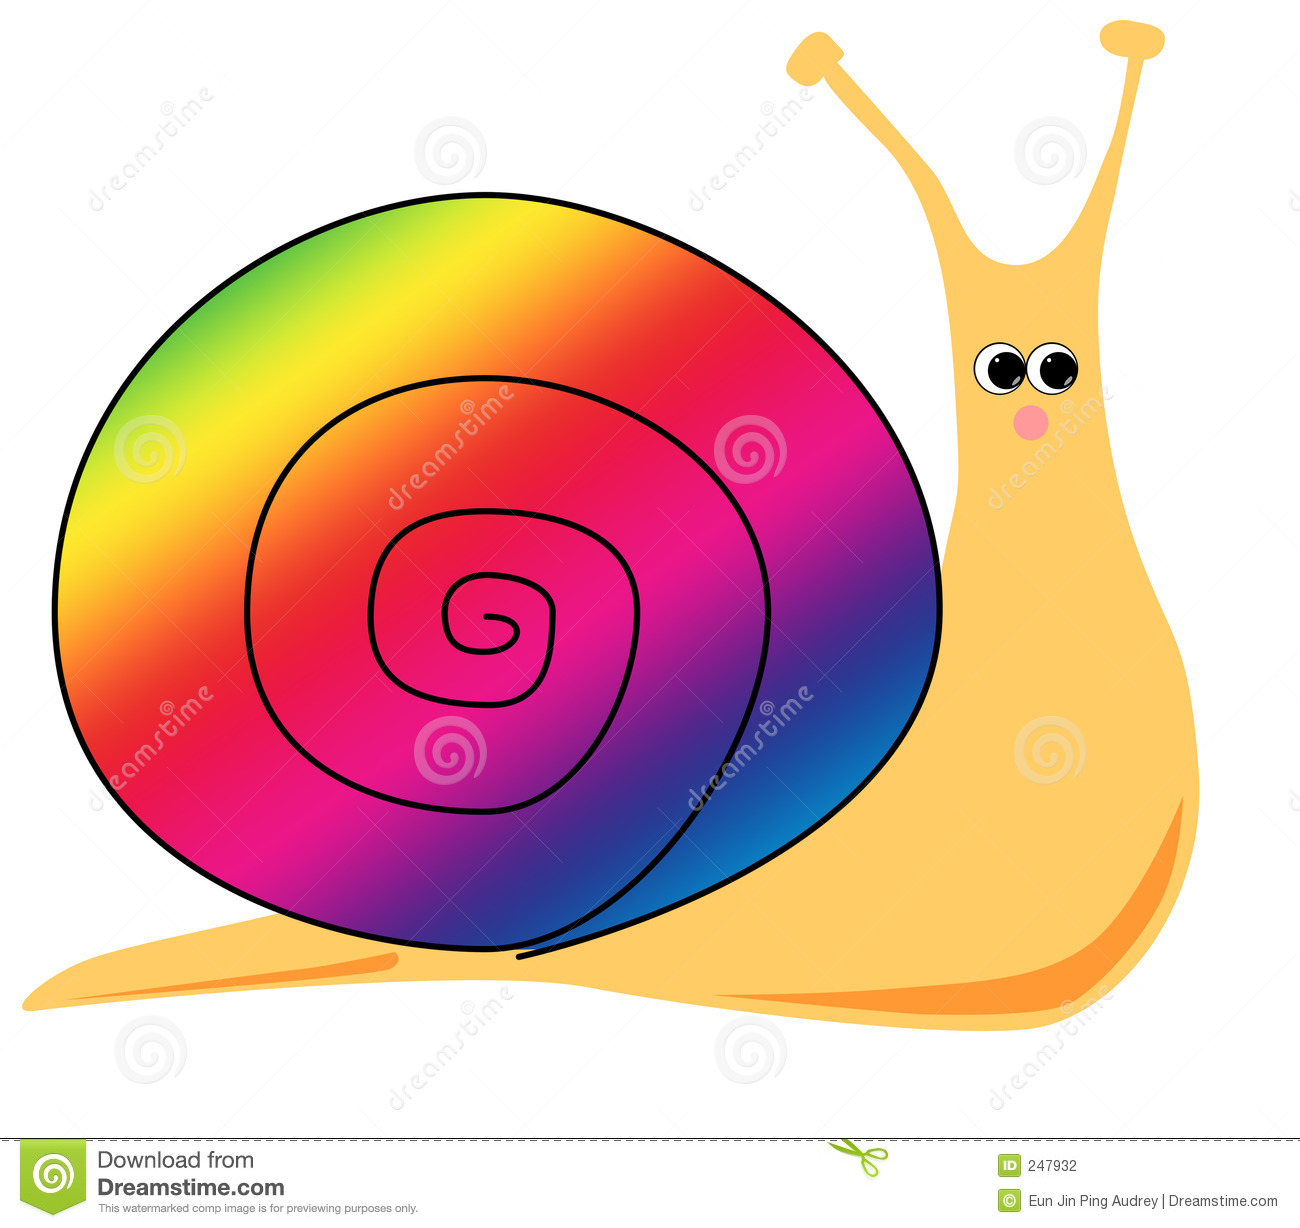 Cartoon snail rainbow.